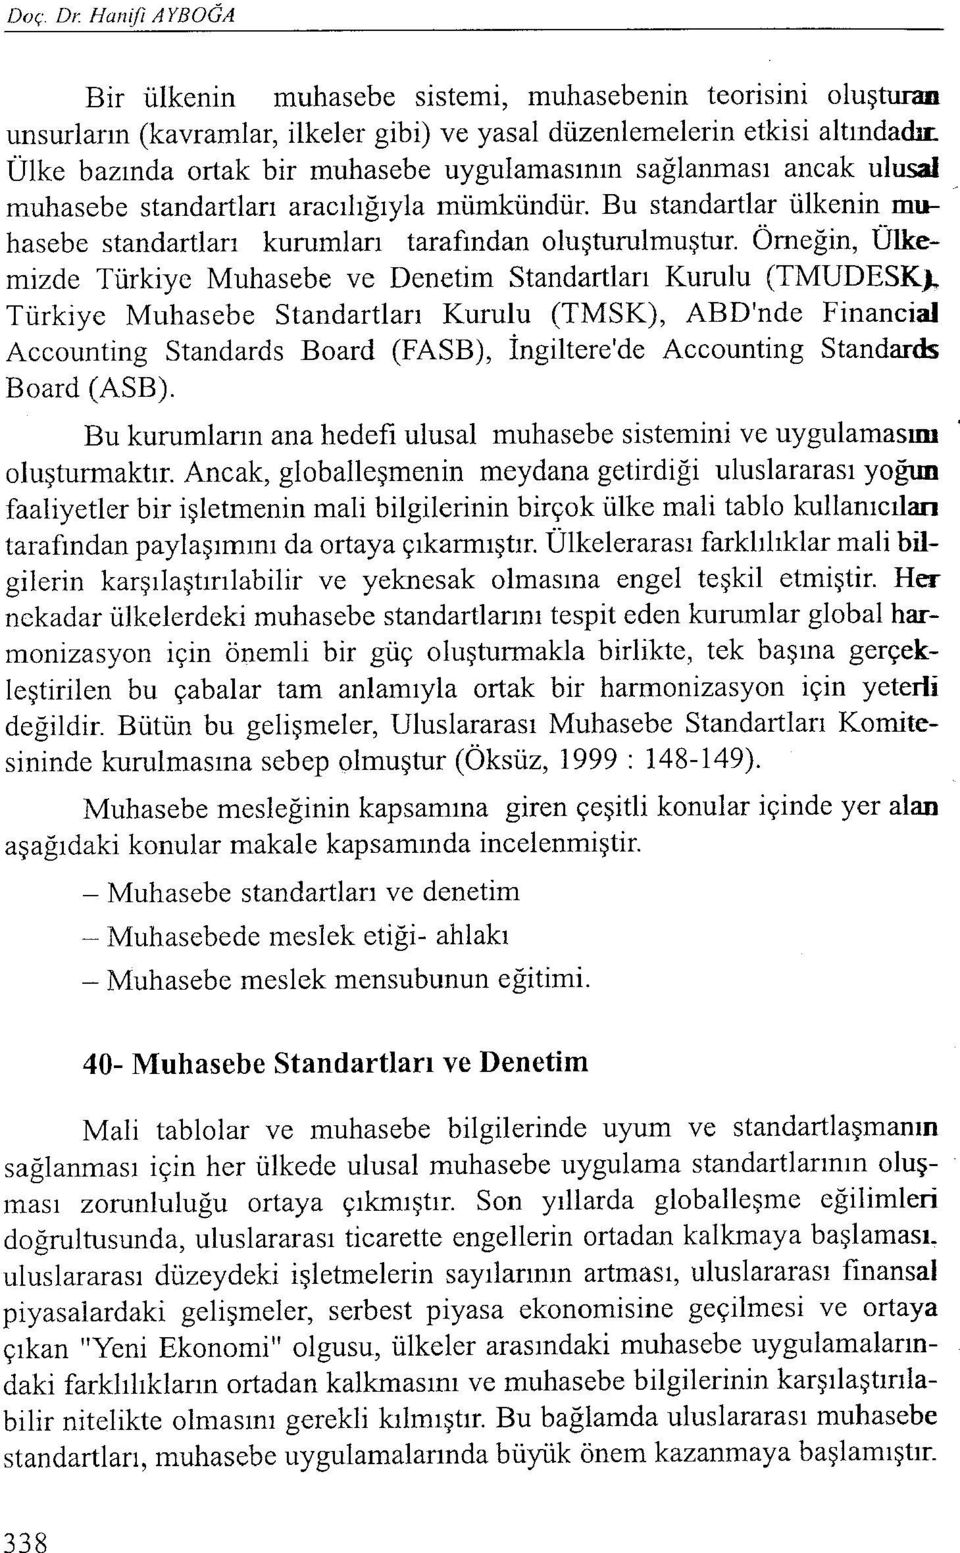 hasebe standartları kurumları tarafından oluşturulmuştur. Örneğin, Ülkemizde Türkiye Muhasebe ve Denetim Standartları Kurulu (TMUDESK).